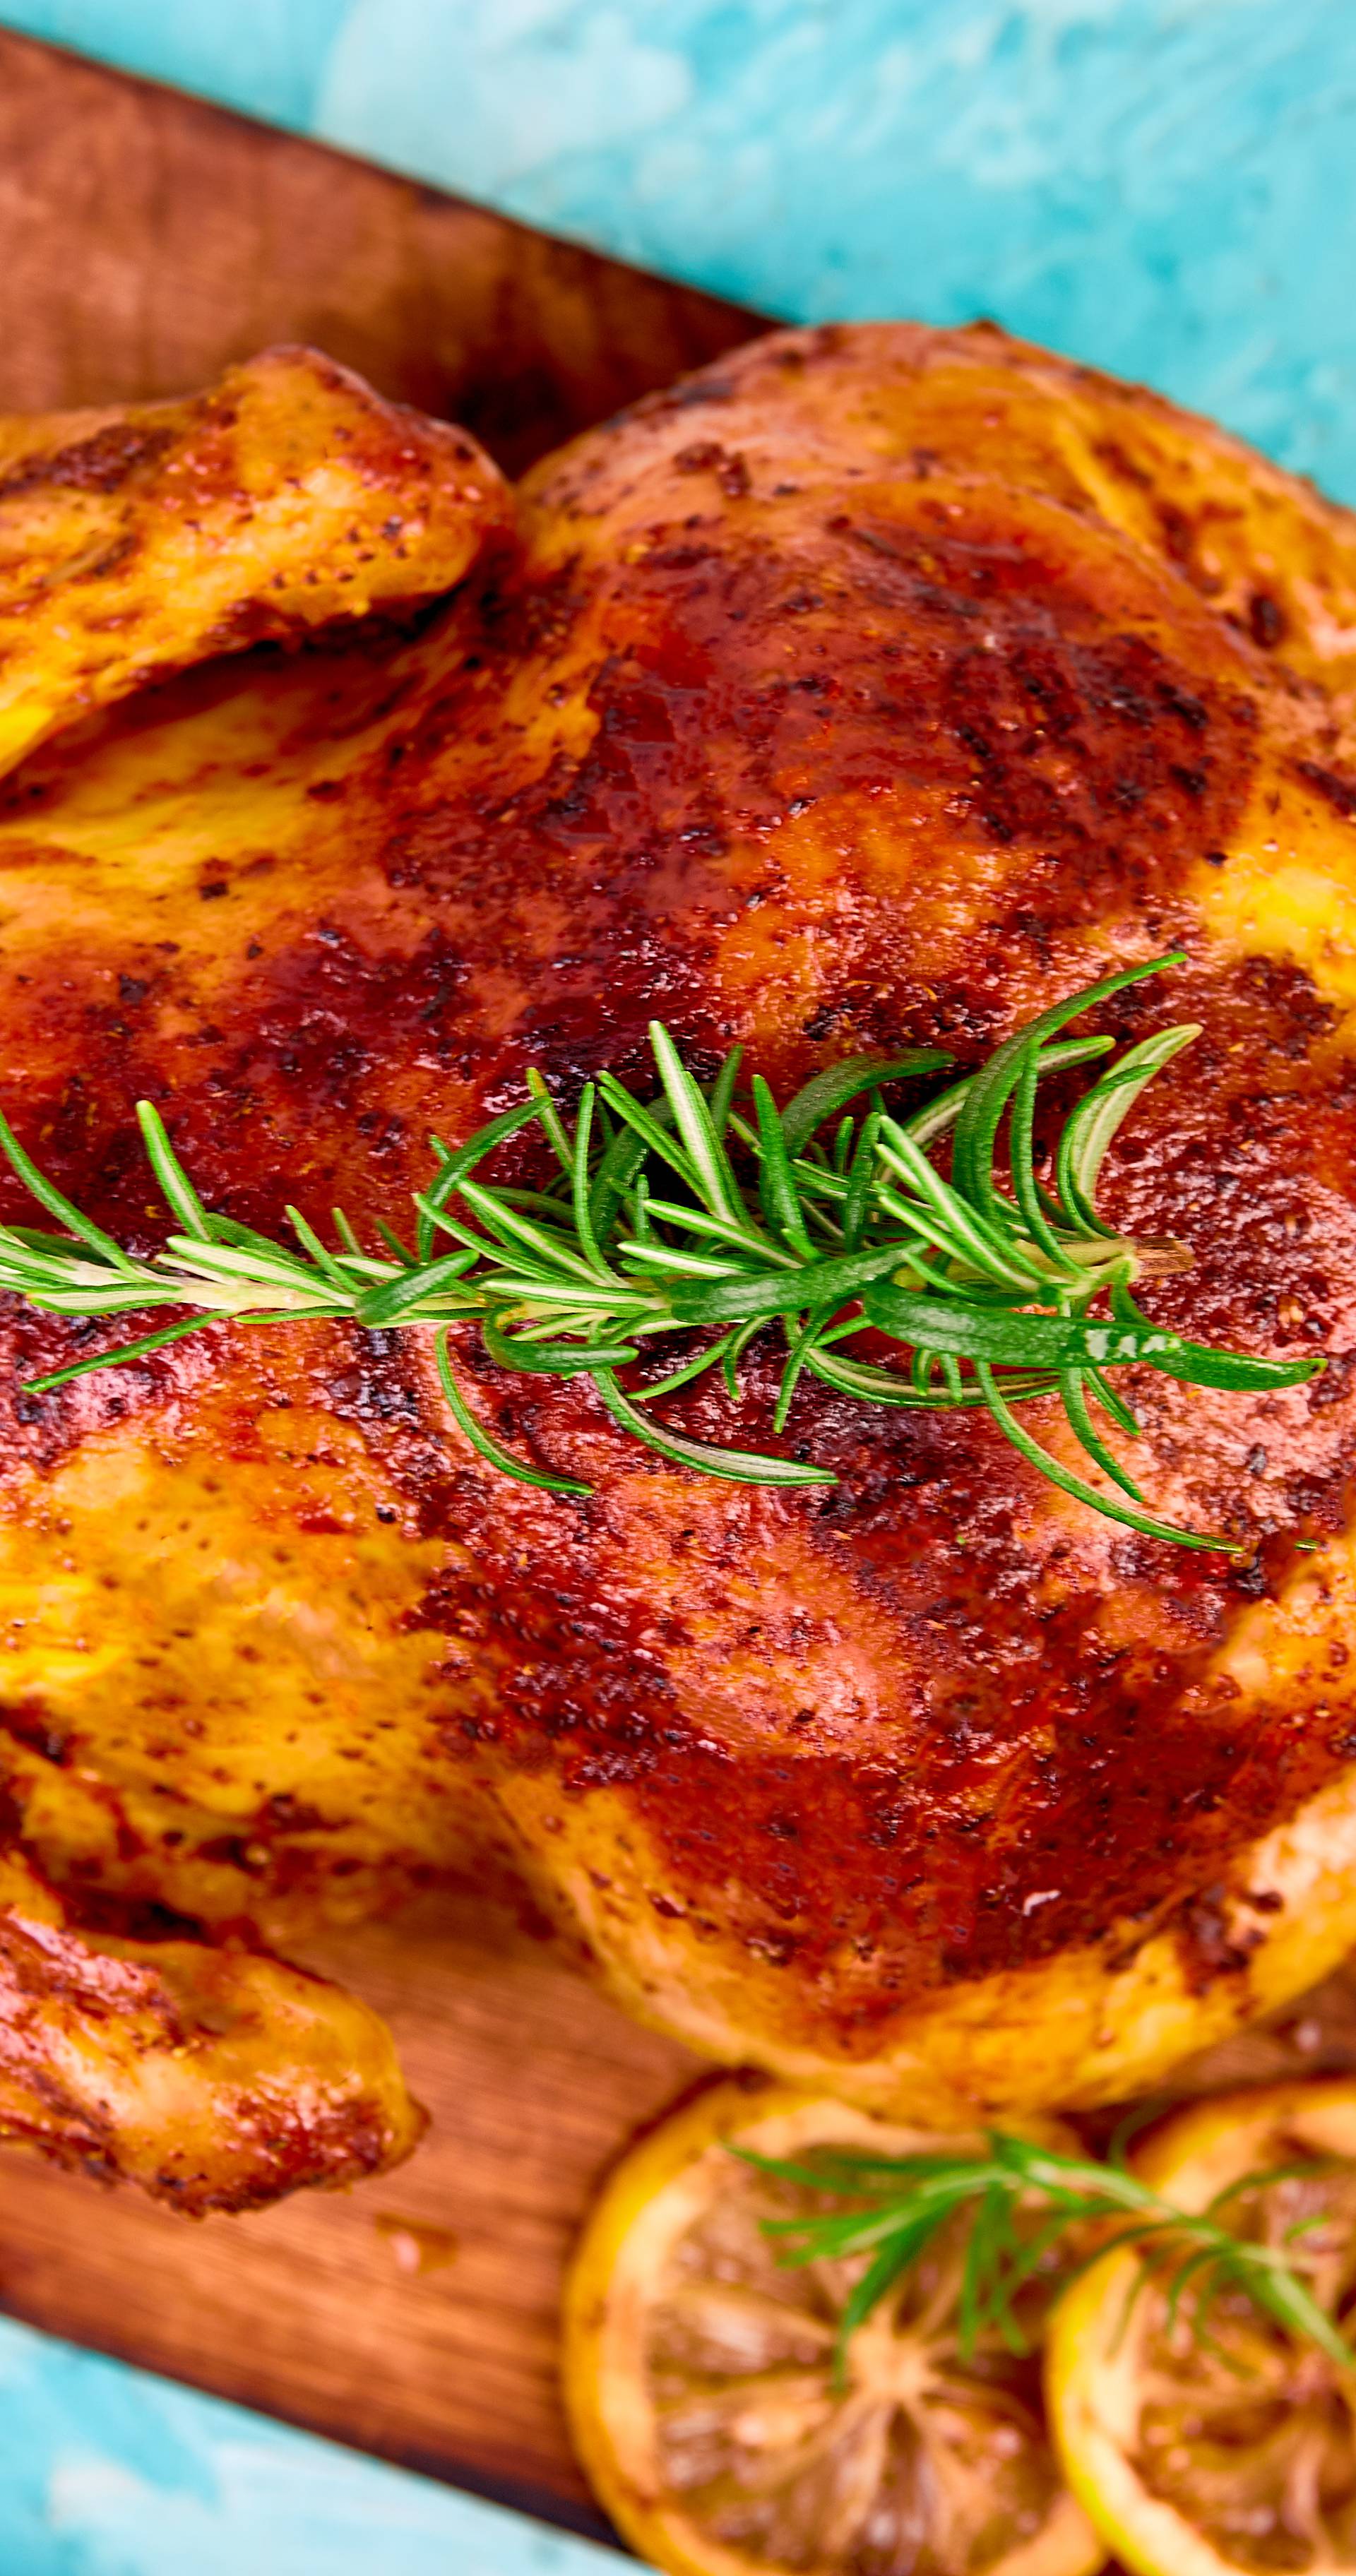 Osnove o mesu: Mali trikovi u pečenju, kuhanju i paniranju